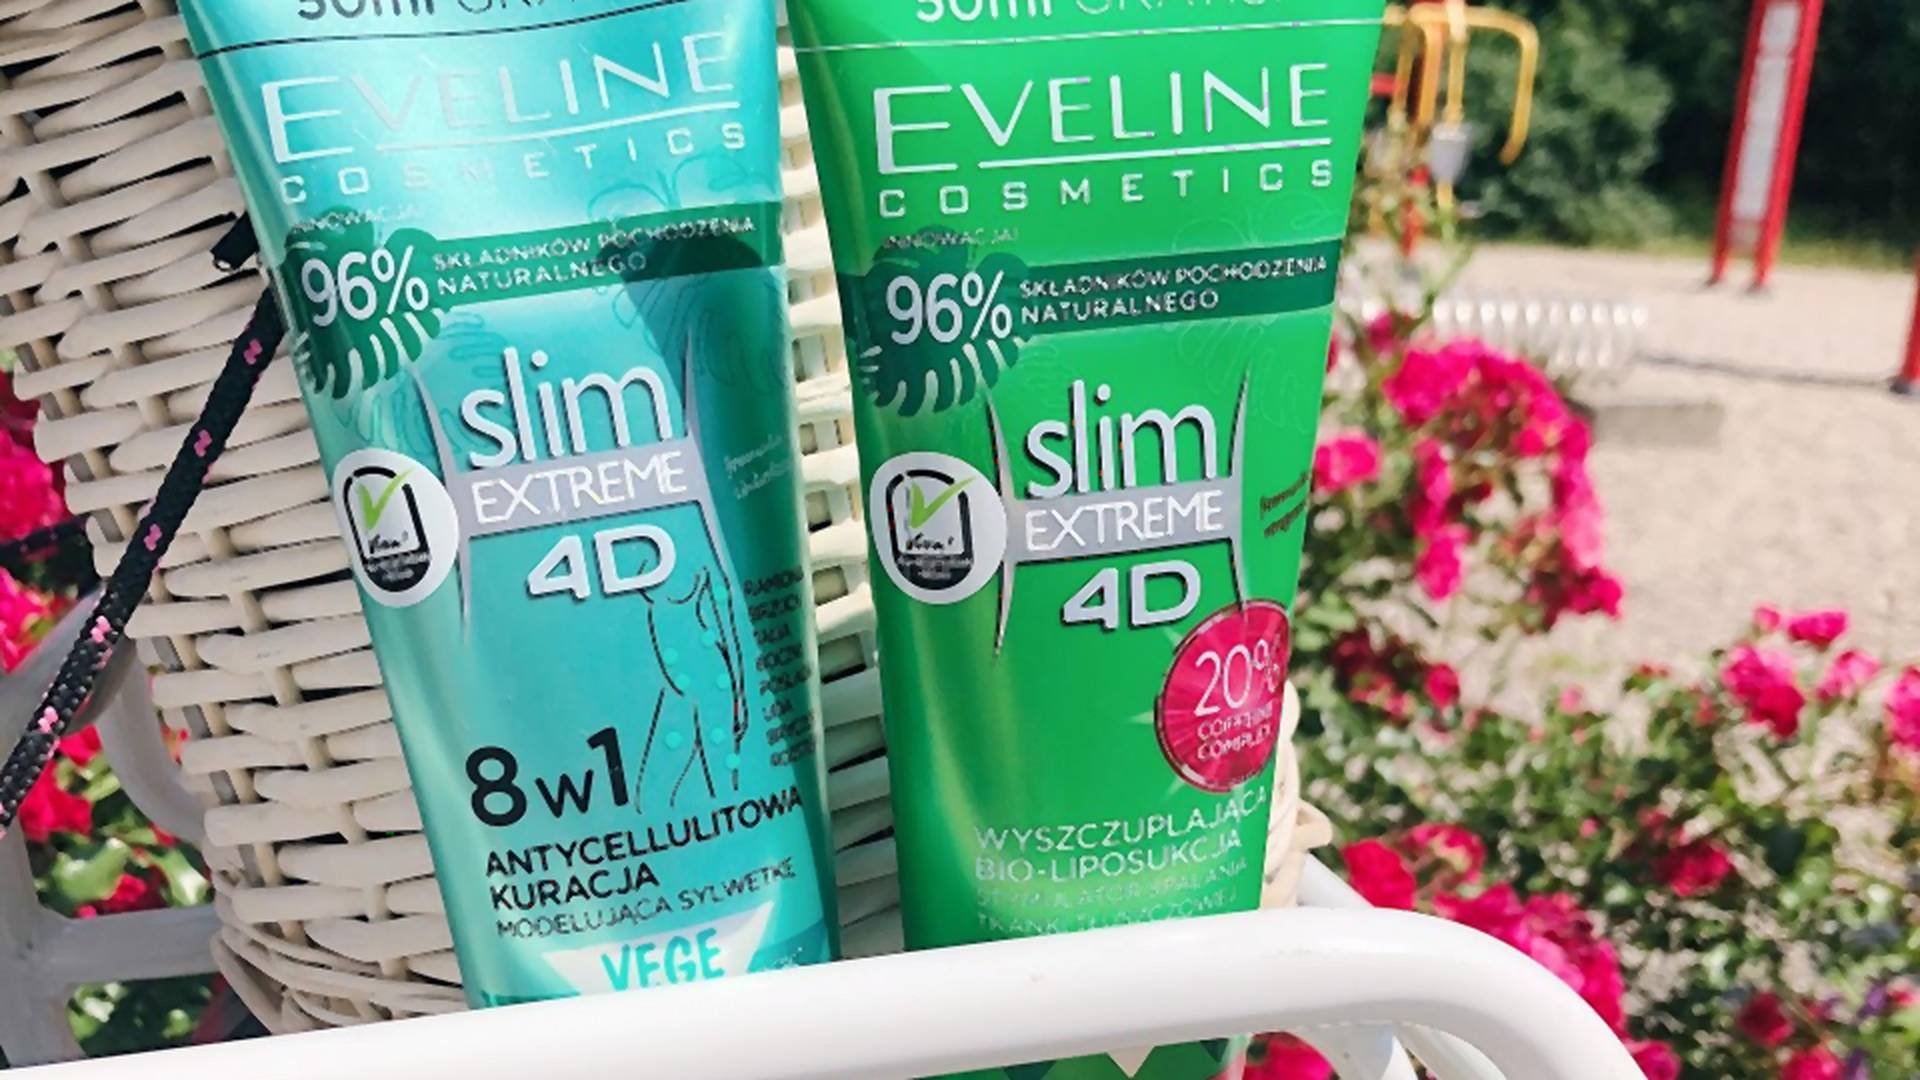 #NIECHOWAMSIE2020 czyli przygotowania do wakacyjnej sylwetki. Nasz test produktów Slim Extreme Eveline Cosmetics!